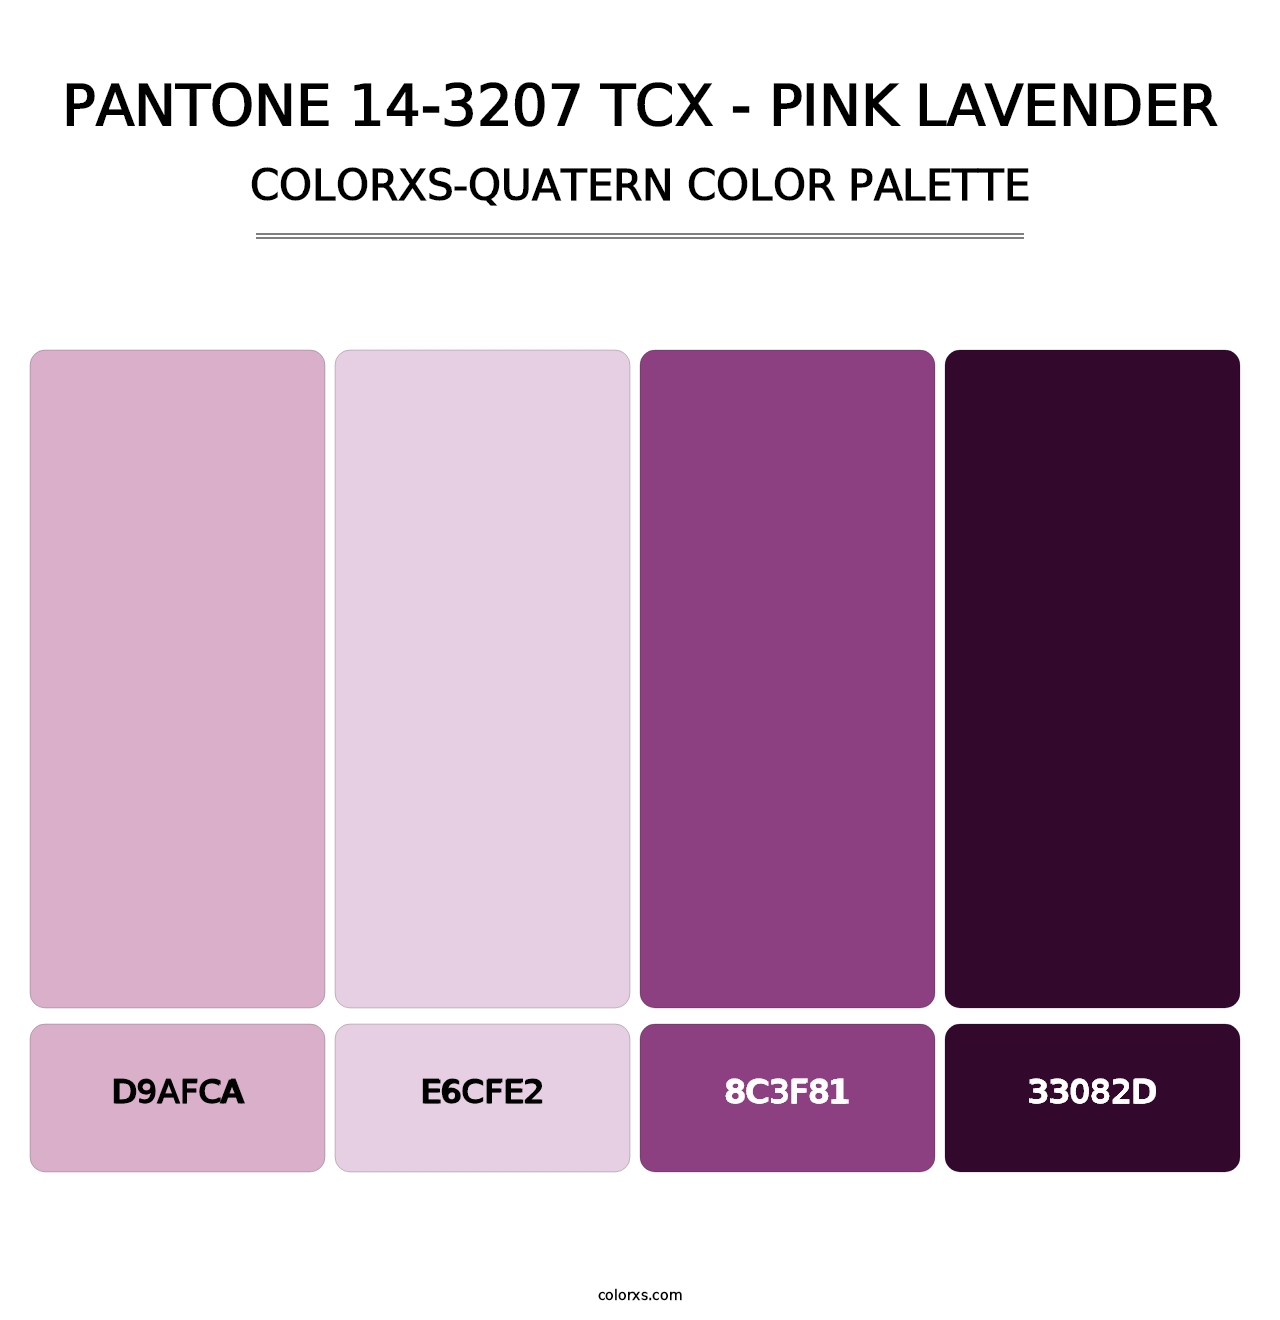 PANTONE 14-3207 TCX - Pink Lavender - Colorxs Quatern Palette